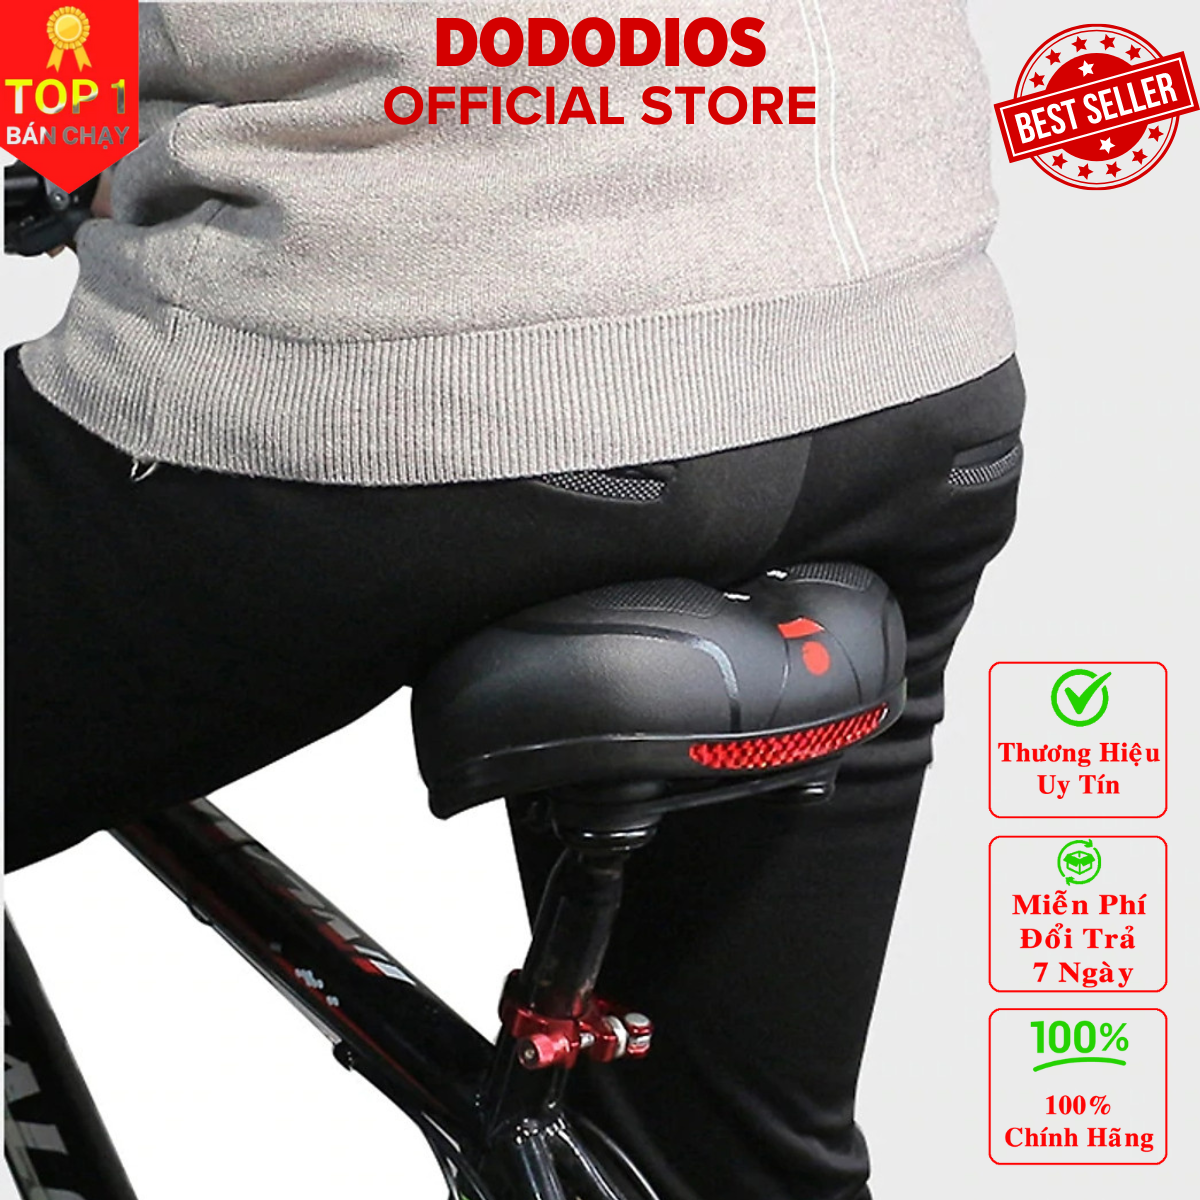 [Chính hãng] yên xe đạp thể thao êm ái thoáng khí dễ lắp đặt - Đệm Yên xe địa hình thể thao chuyên dụng Thương hiệu DoDoDios